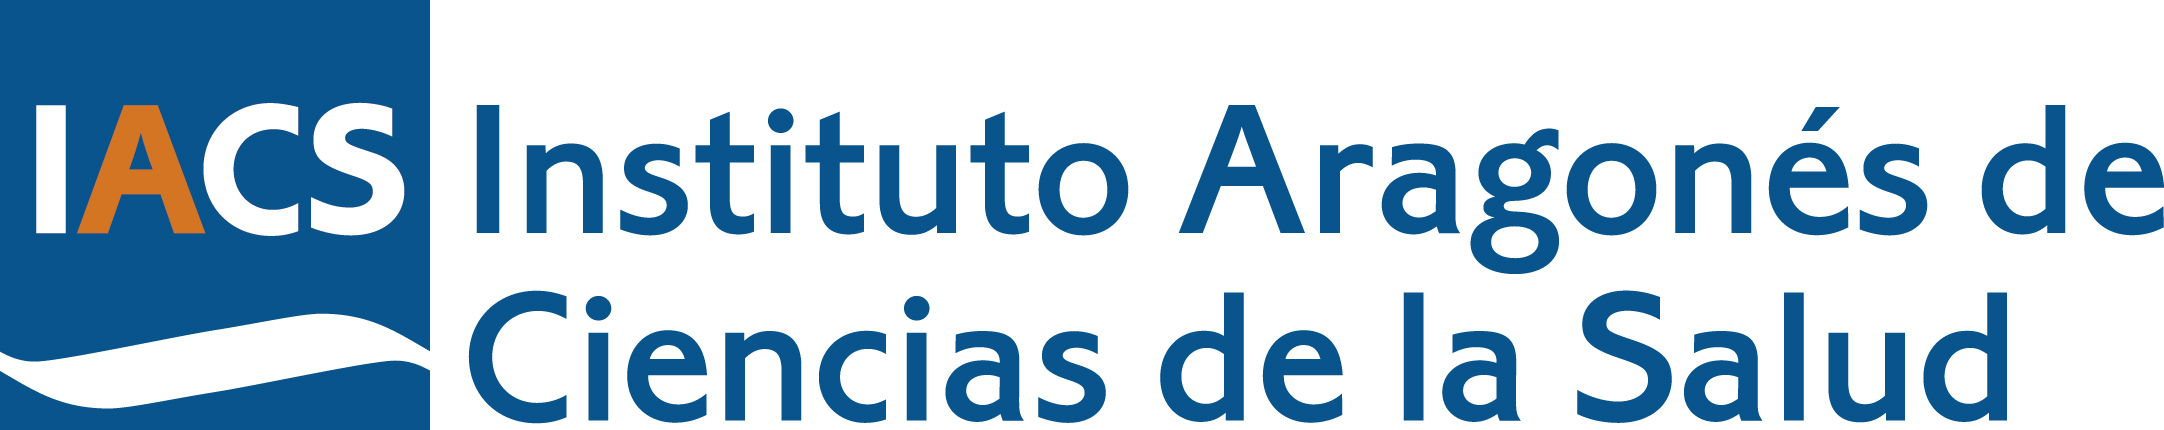 Logotipo del Instituto Aragonés de Ciencias de la Salud